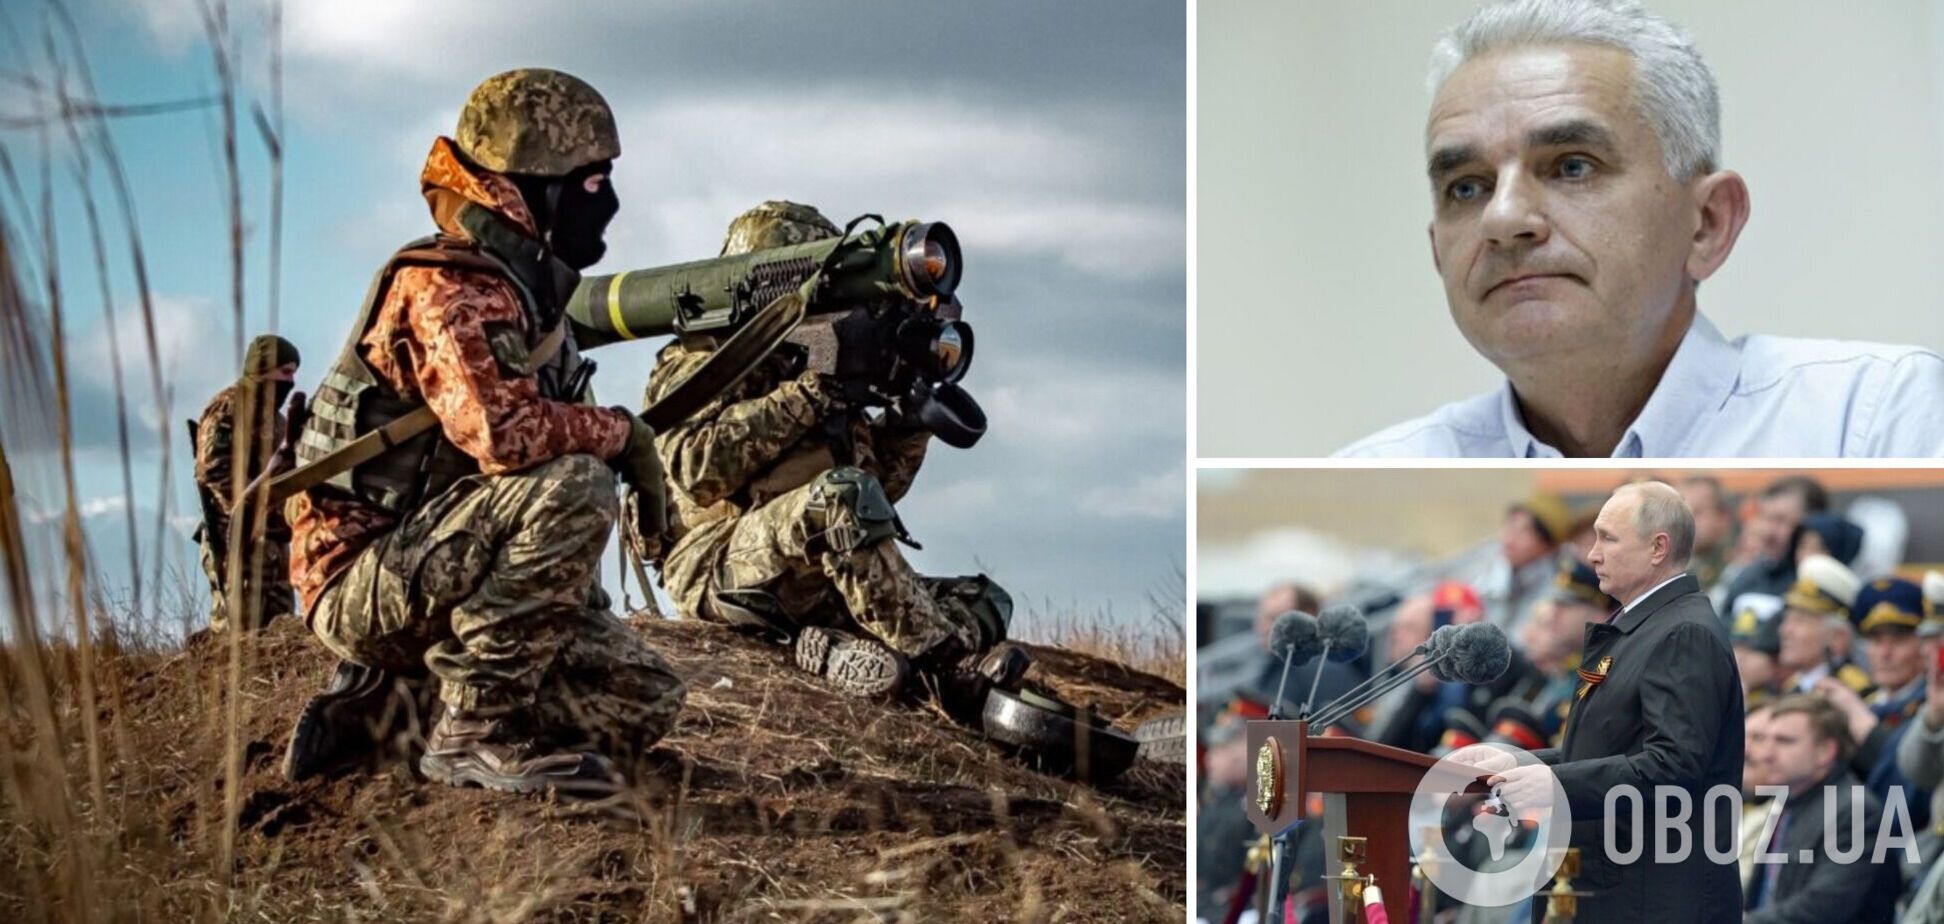 Військовий експерт Мельник: Україна може бити по РФ, але зброю США використовувати не буде. Інтерв’ю